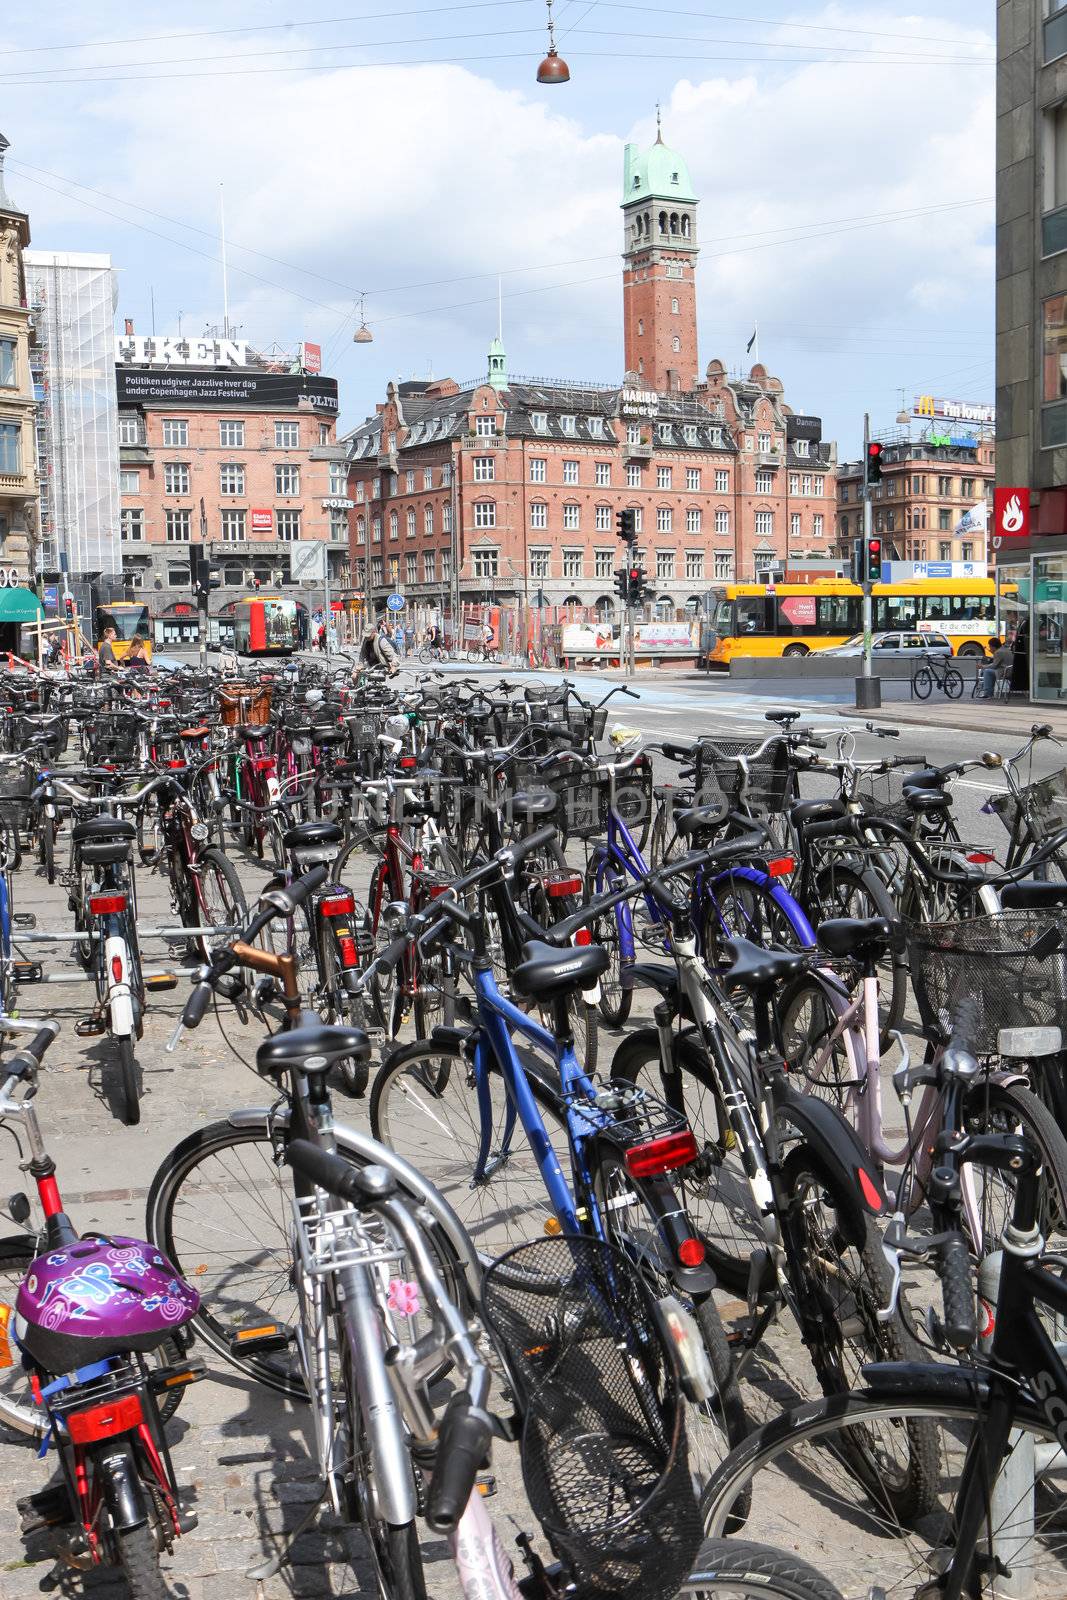 Bicycles in Copenhagen by jasonvosper